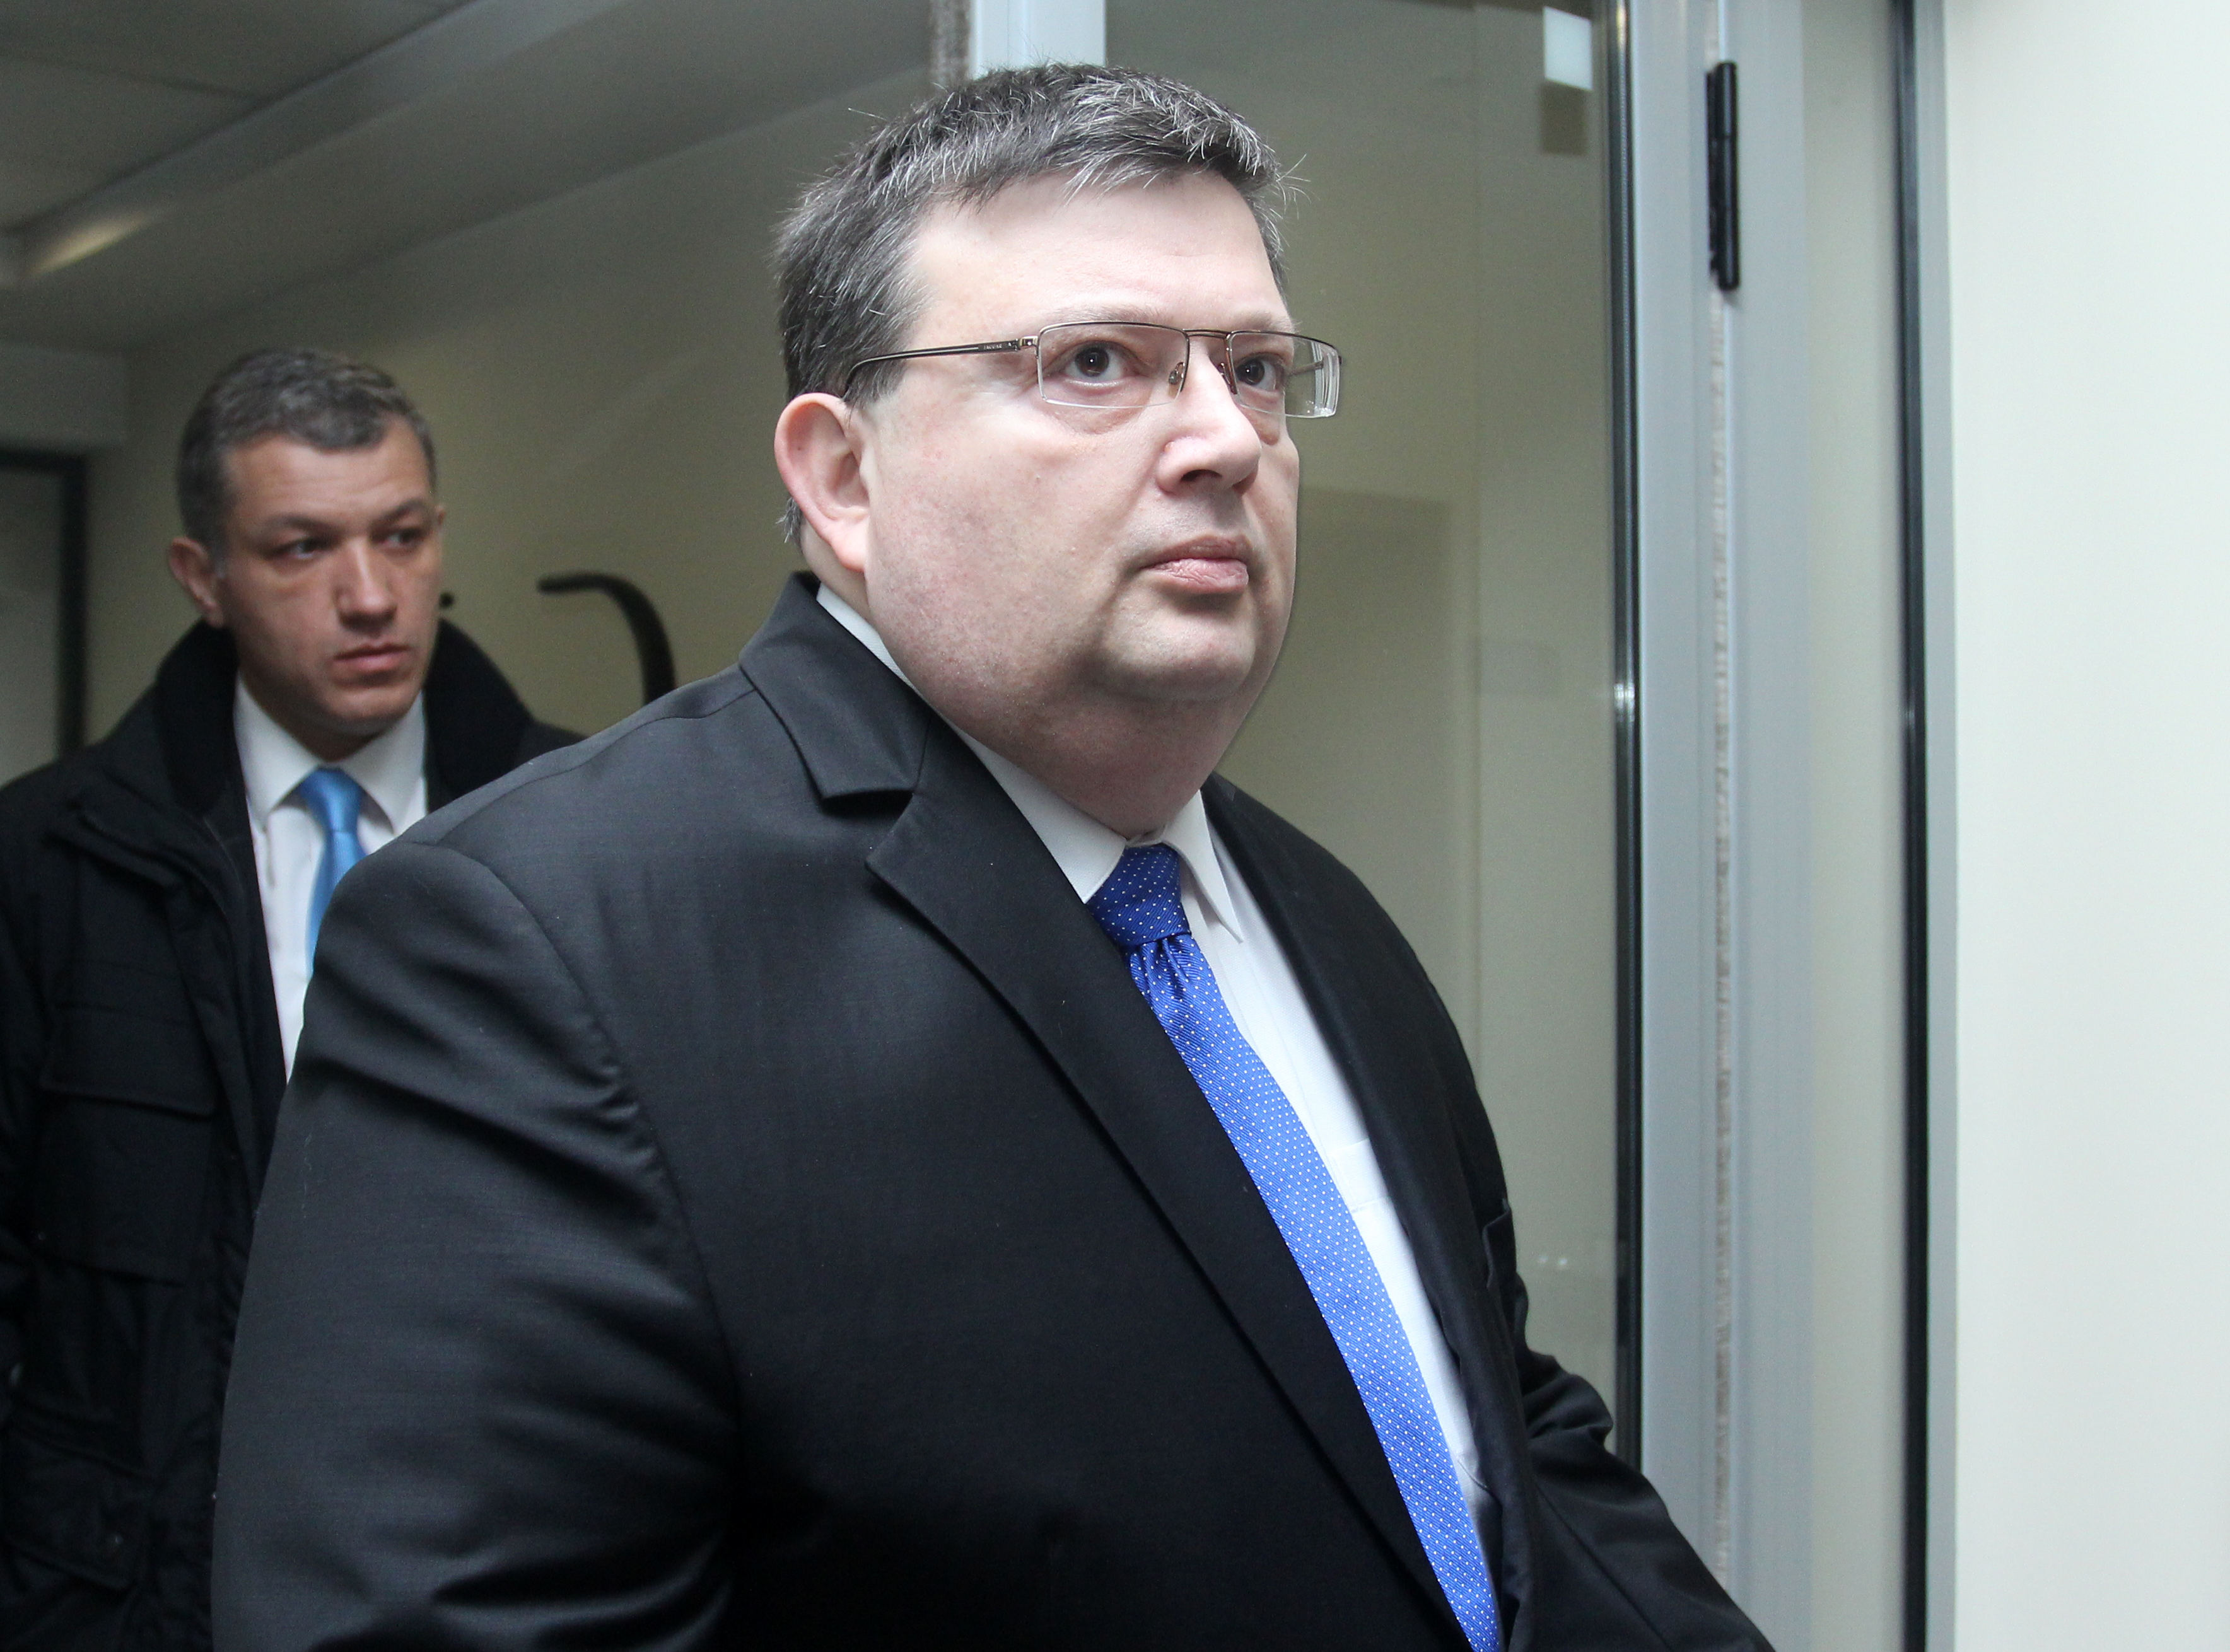 Още няма обвинение за пране на пари срещу Цветан Василев, обяви Сотир Цацаров